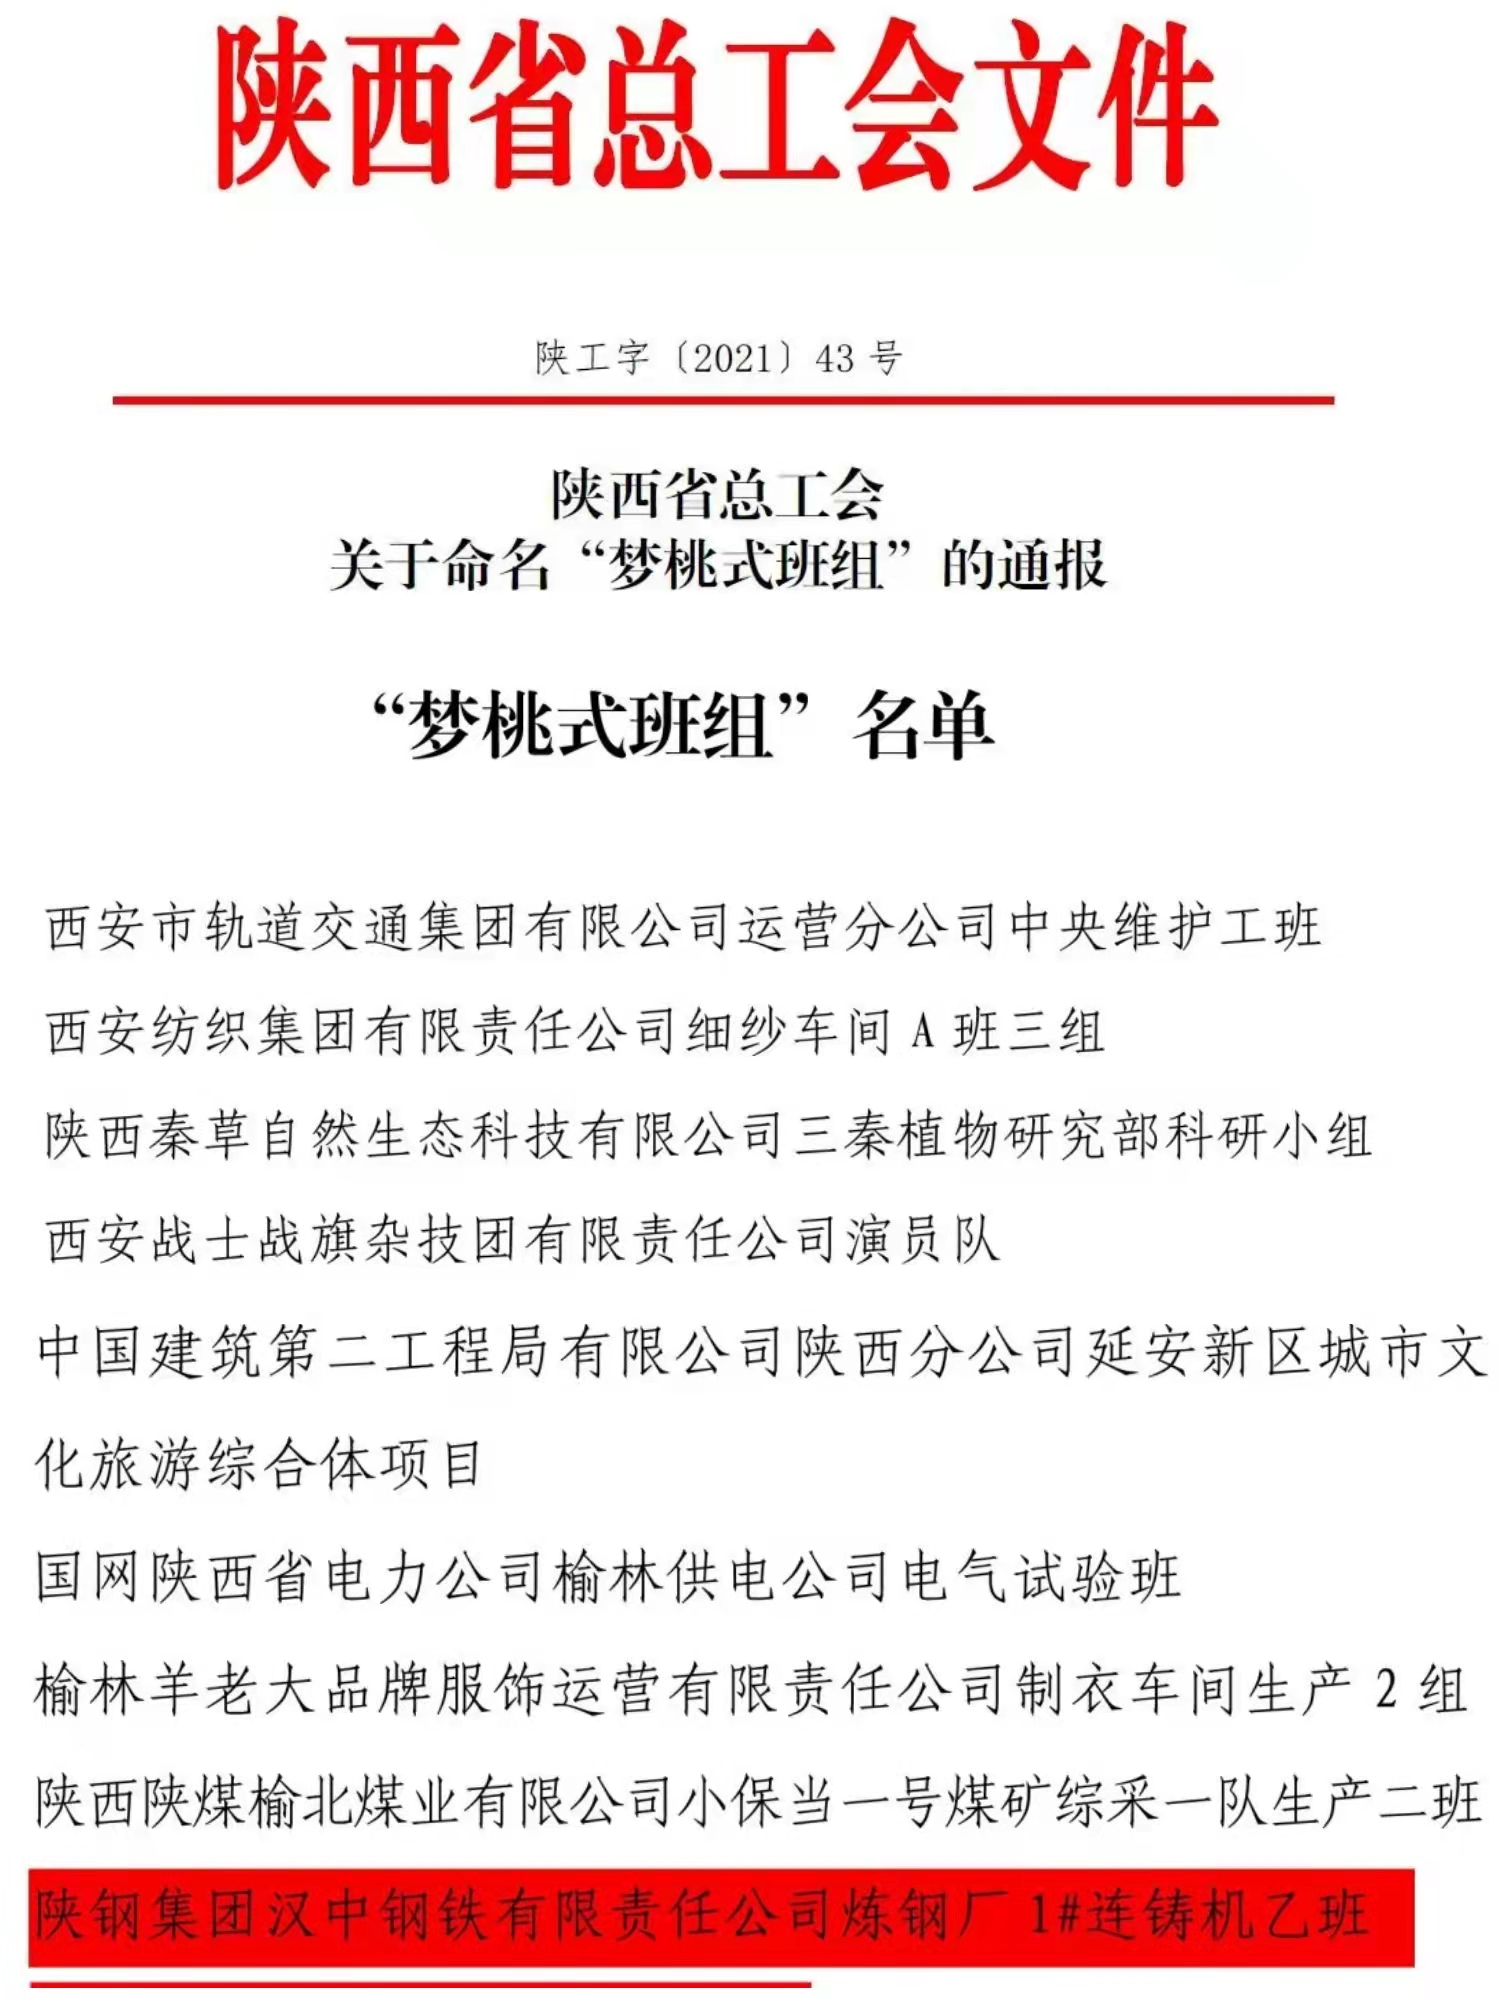 煉鋼廠連鑄車間1#機乙班被陜西省總工會命名為“夢桃式班組”